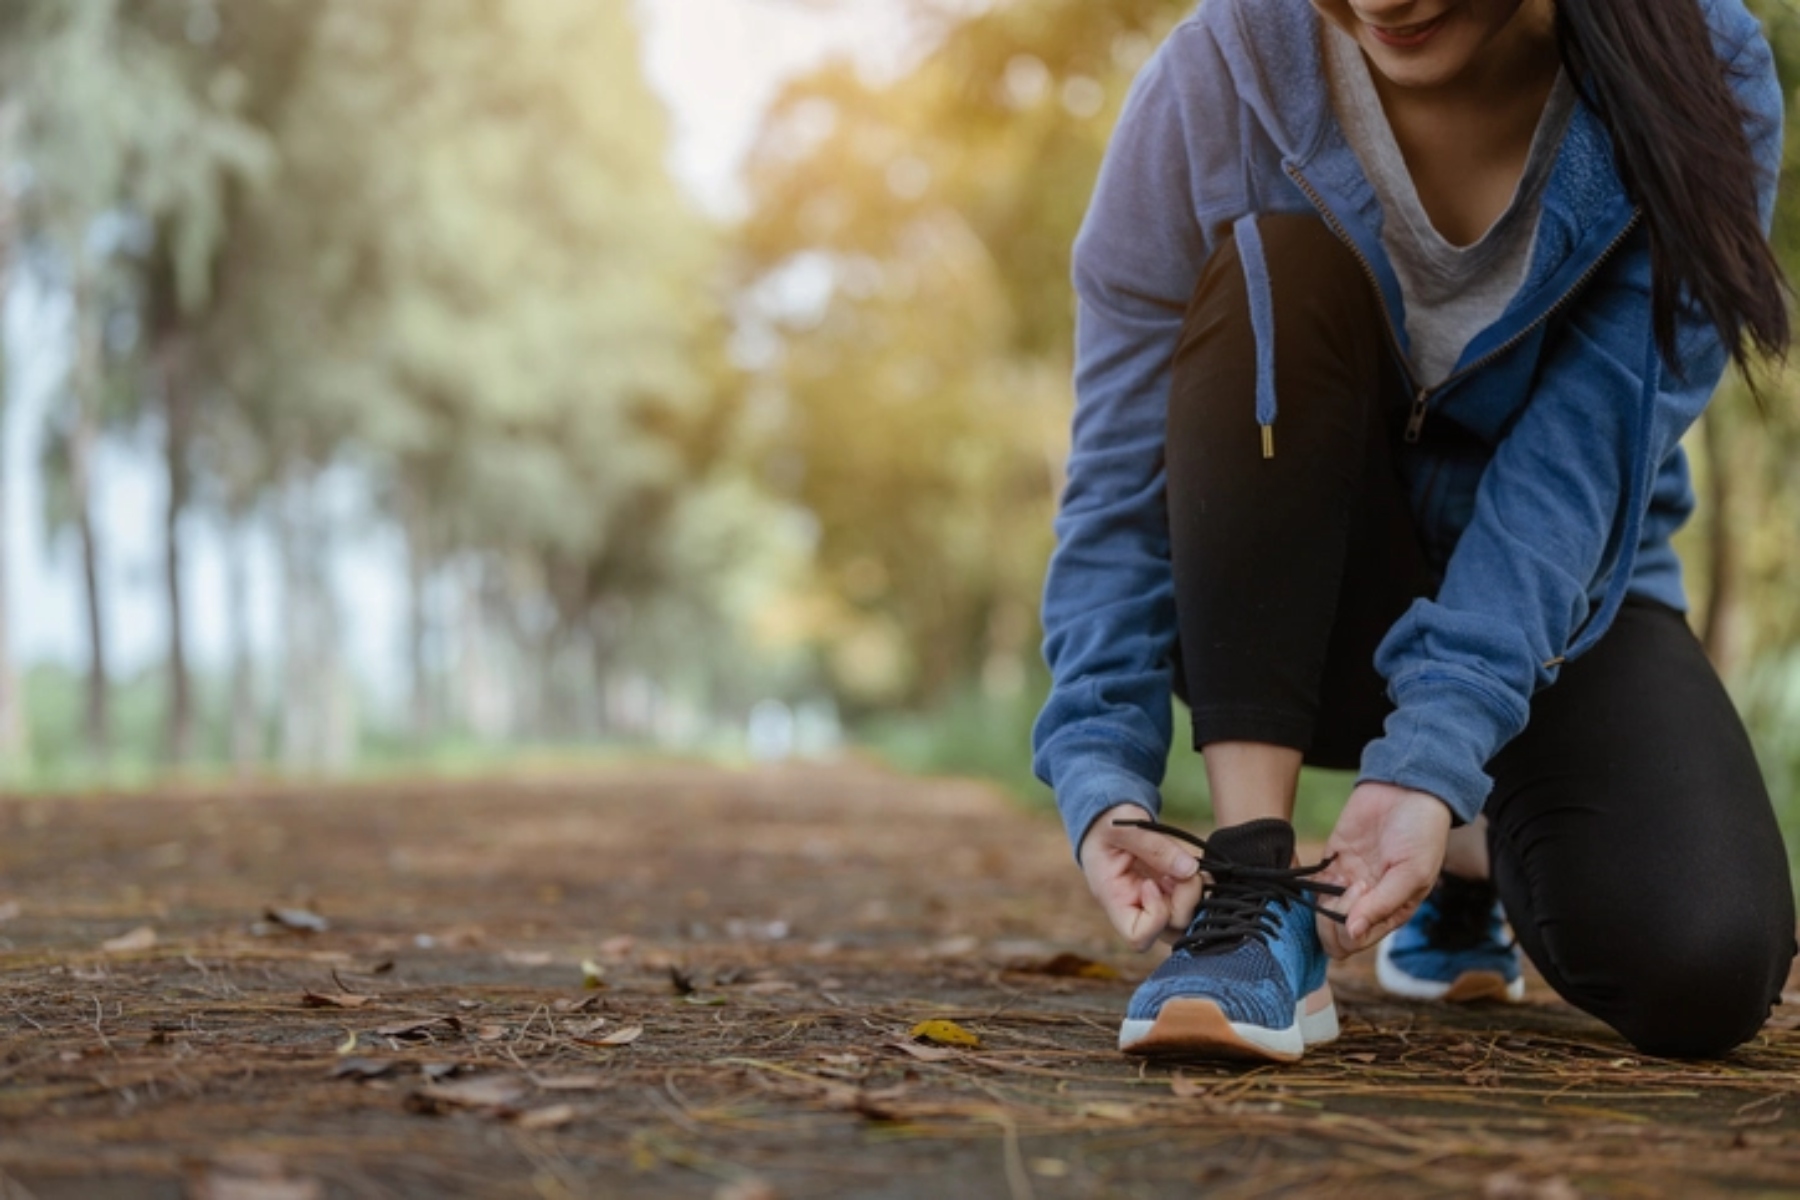 Άθληση: Είναι ασφαλές το τρέξιμο με κιρσούς;